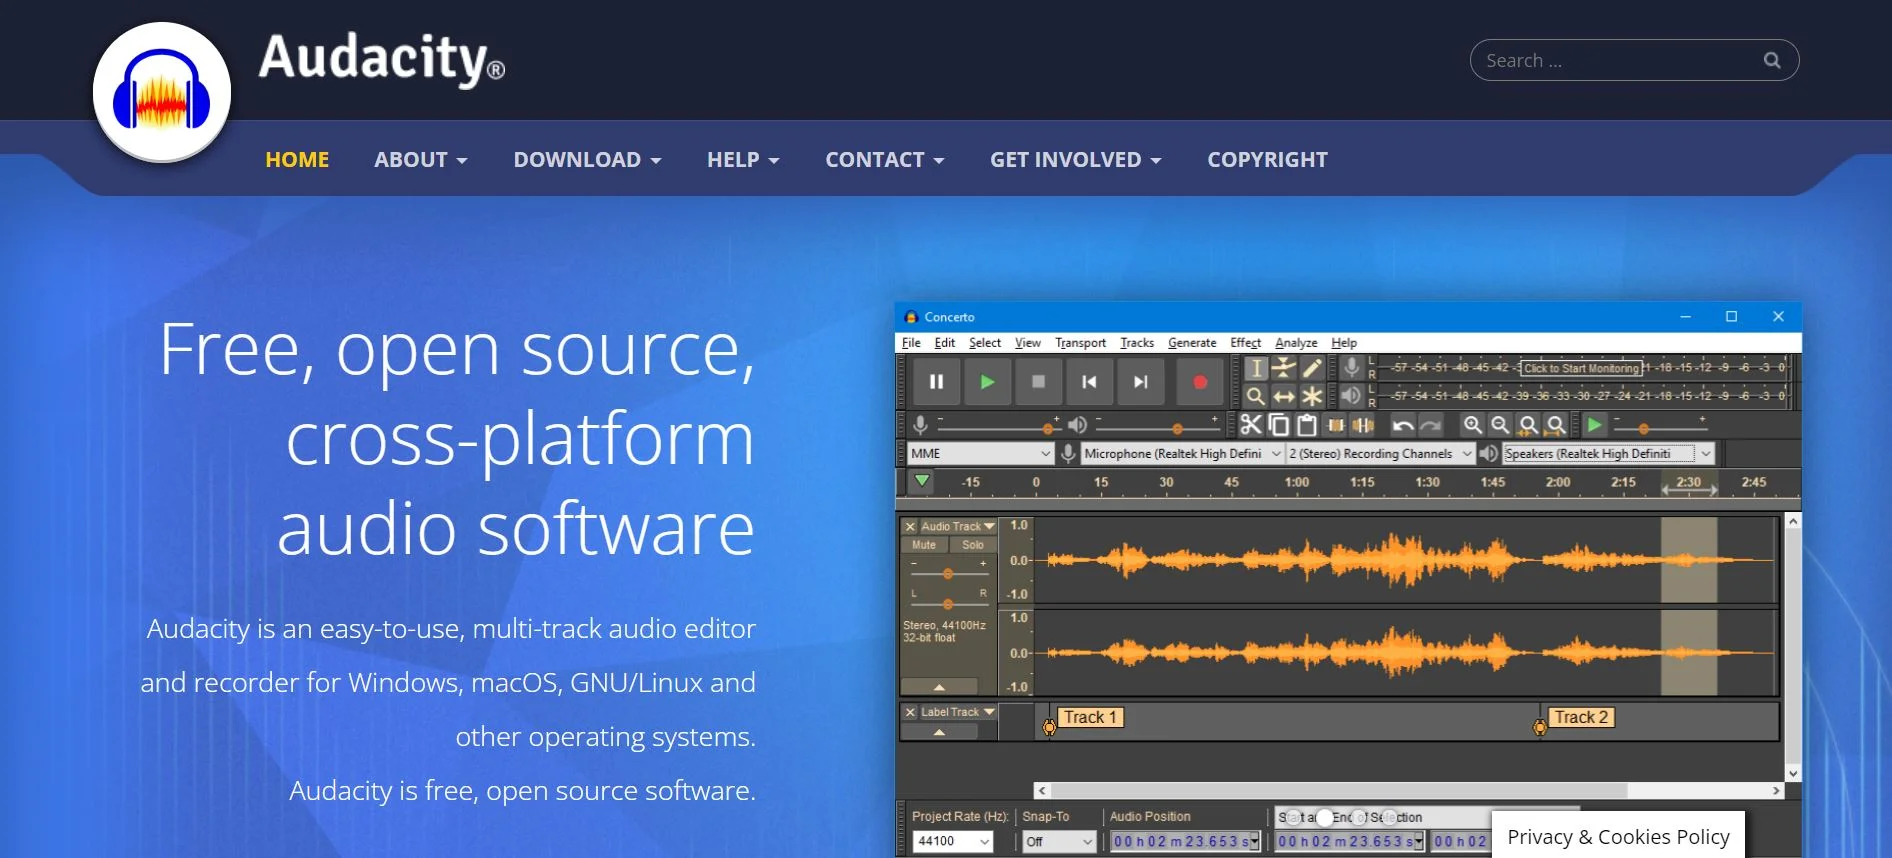 Captura de pantalla de la website de Audacity, la herramienta especializada en edición de audios para crear cursos virtuales.